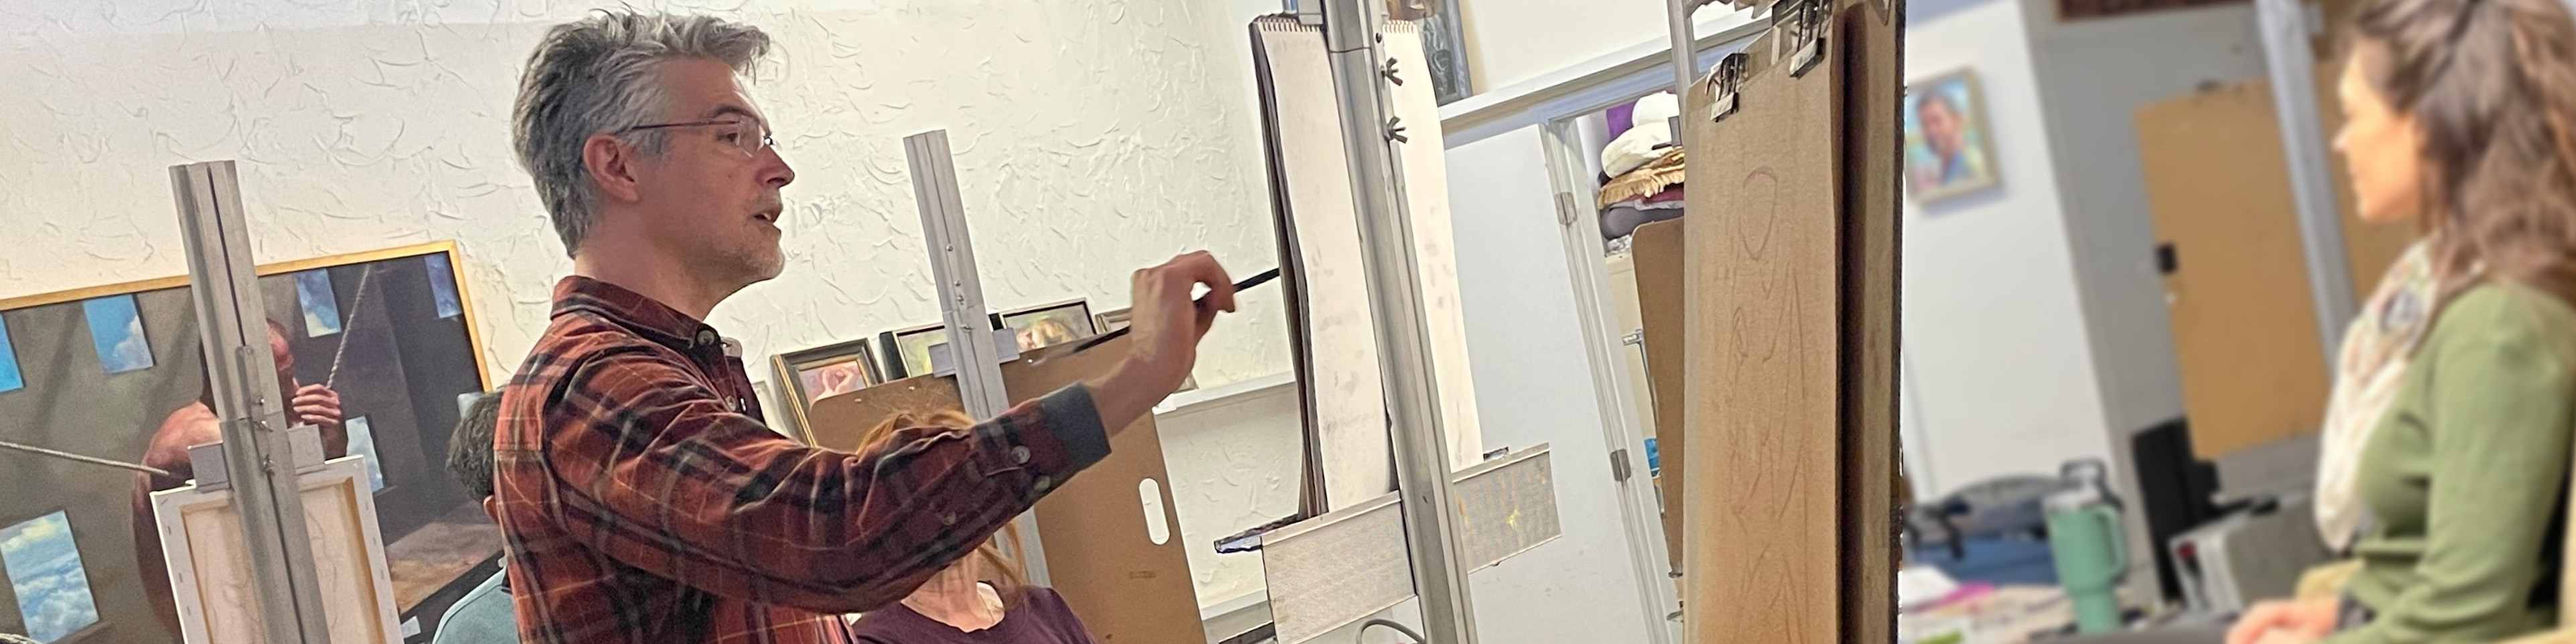 an art instructor teaches a portrait painting class